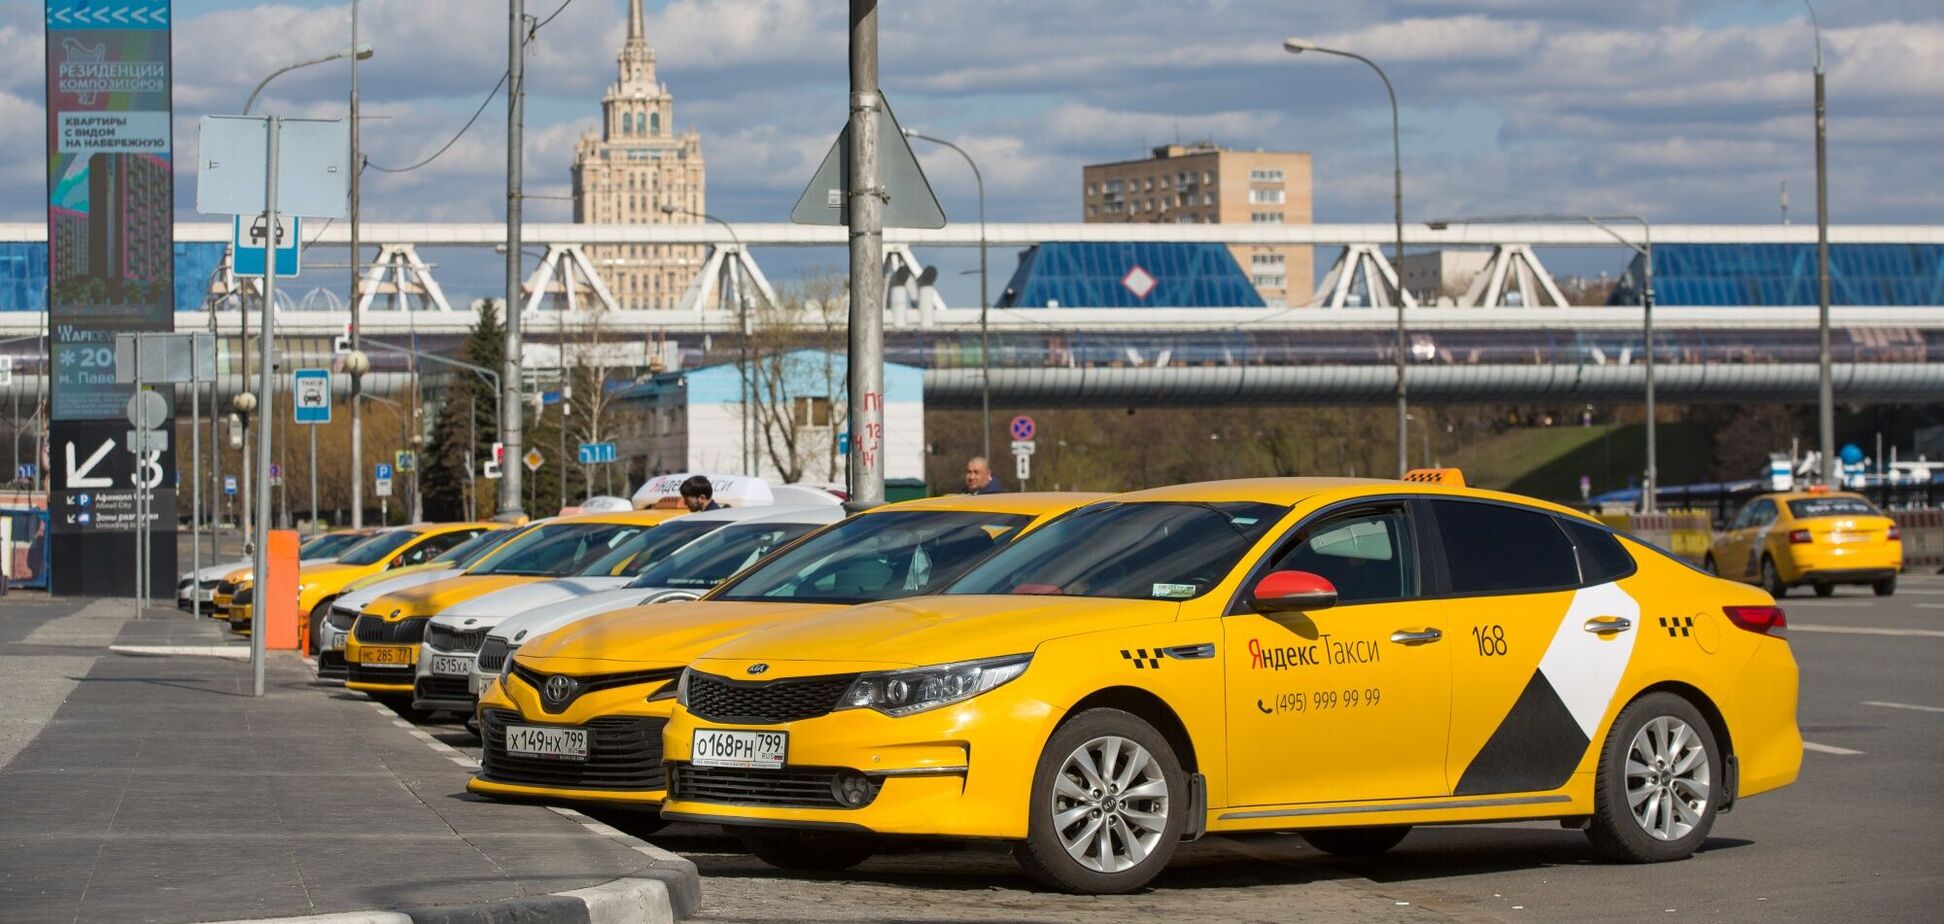 Службы такси хотят обязать делиться данными с ФСБ